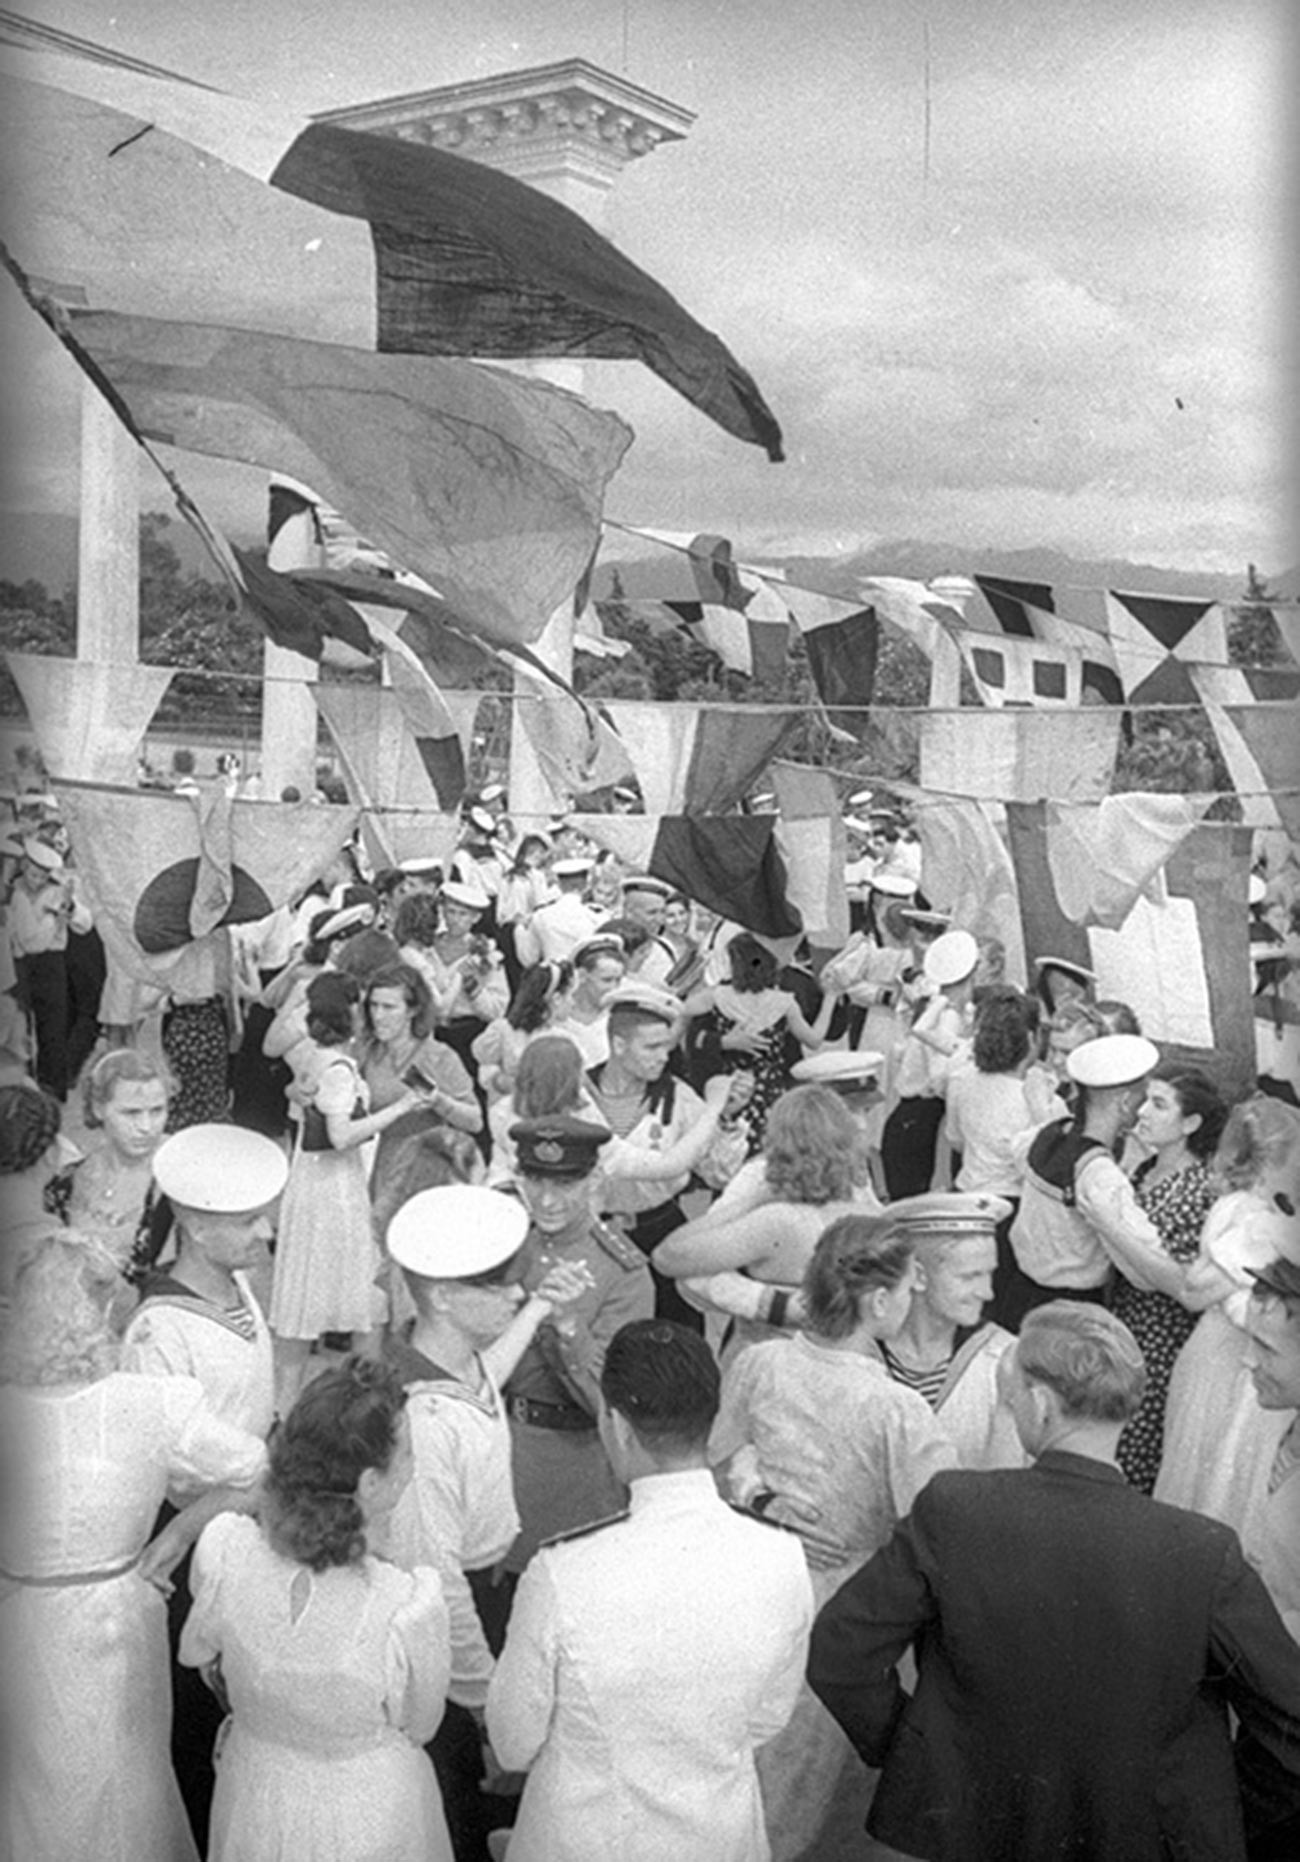 Marins dansant avec de jeunes femmes en Géorgie, en 1944

